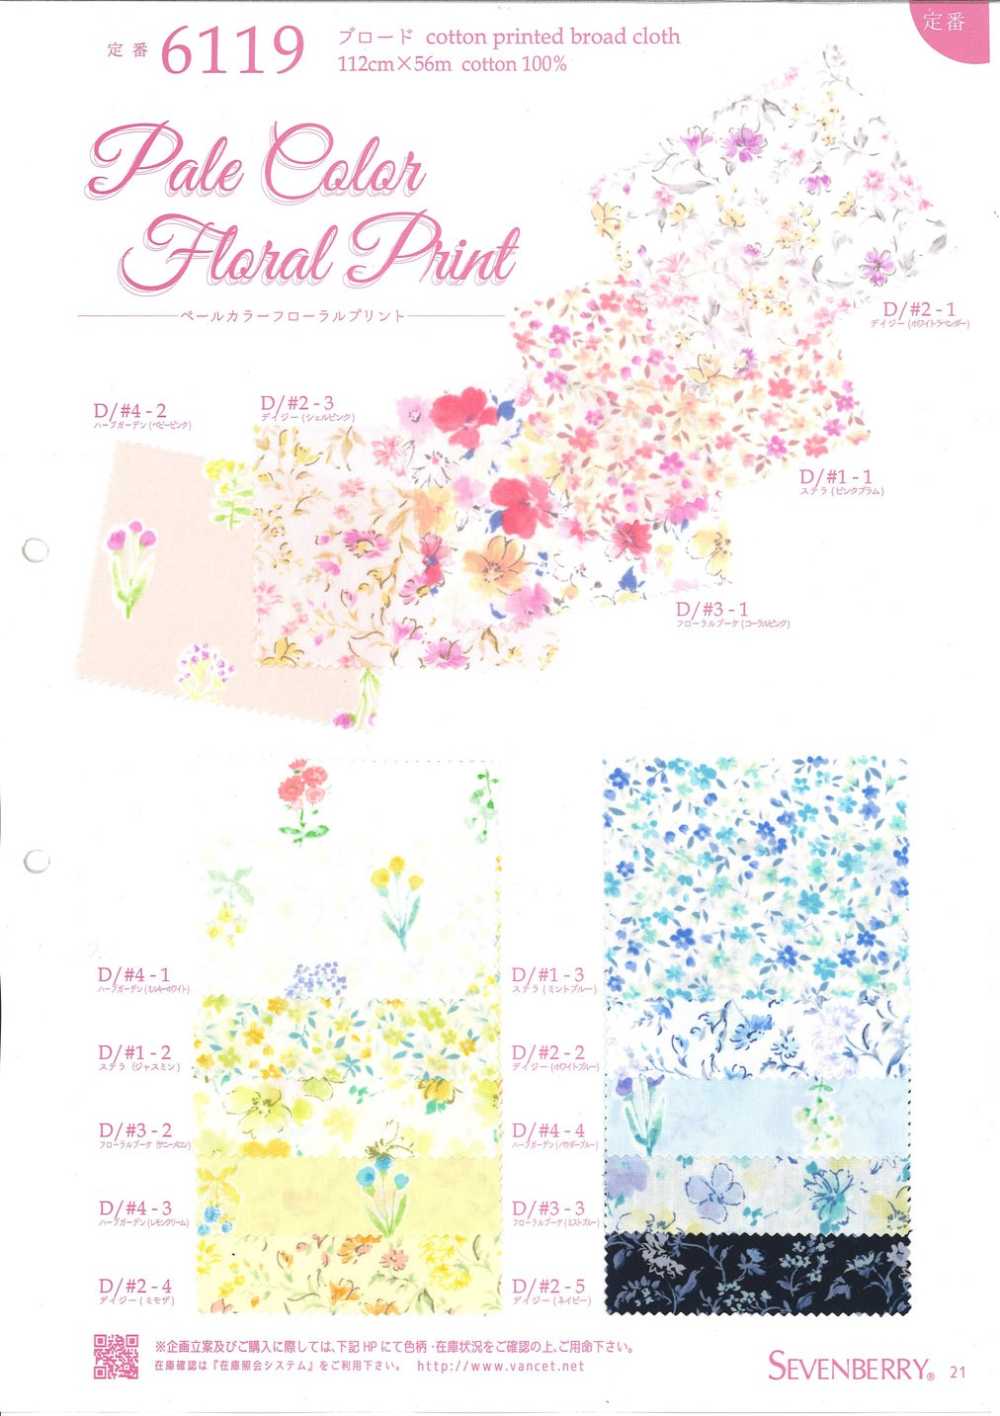 6119 平纹布的浅色花卉印花[面料] VANCET